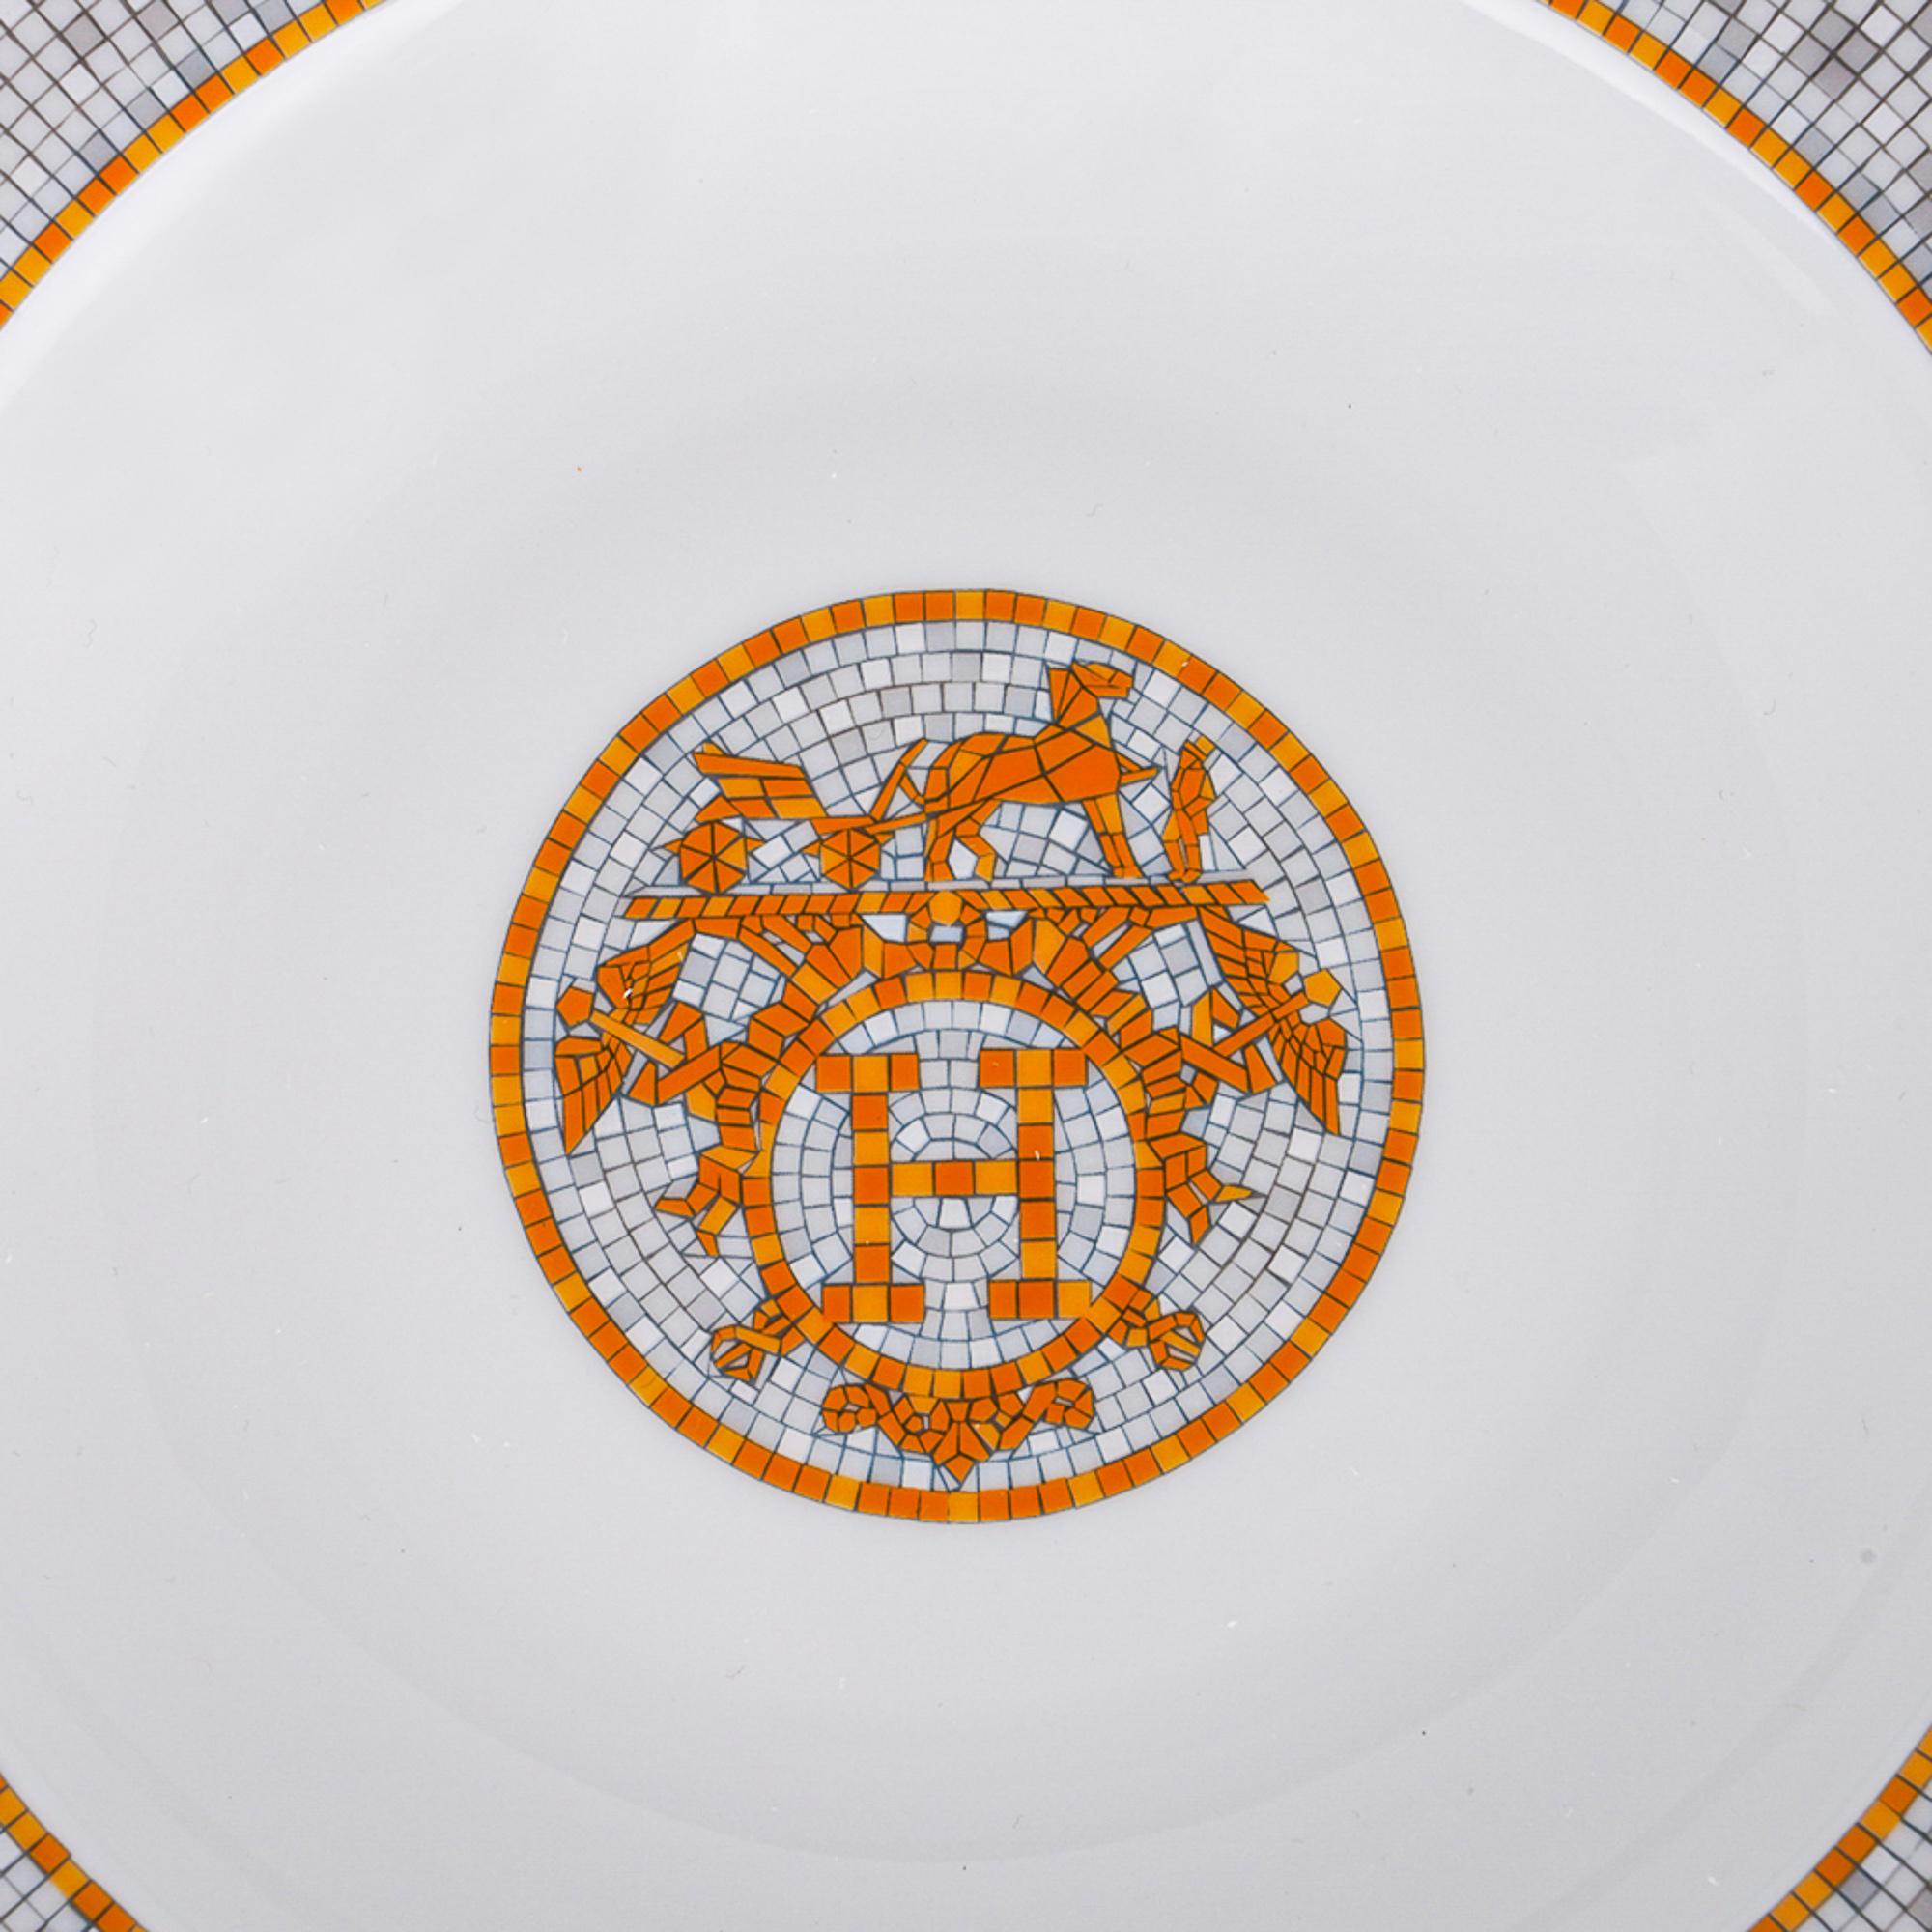 Mightychic bietet einen Hermes Mosaique Au 24 Suppenteller 2er-Set aus Porzellan und Gold an.
Das Mosaikmotiv spiegelt den Mosaikboden im Eingangsbereich des Flagshipstores 24 Faubourg St. Honore in Paris wider.
Für einen eleganten Tisch.
Wunderbar